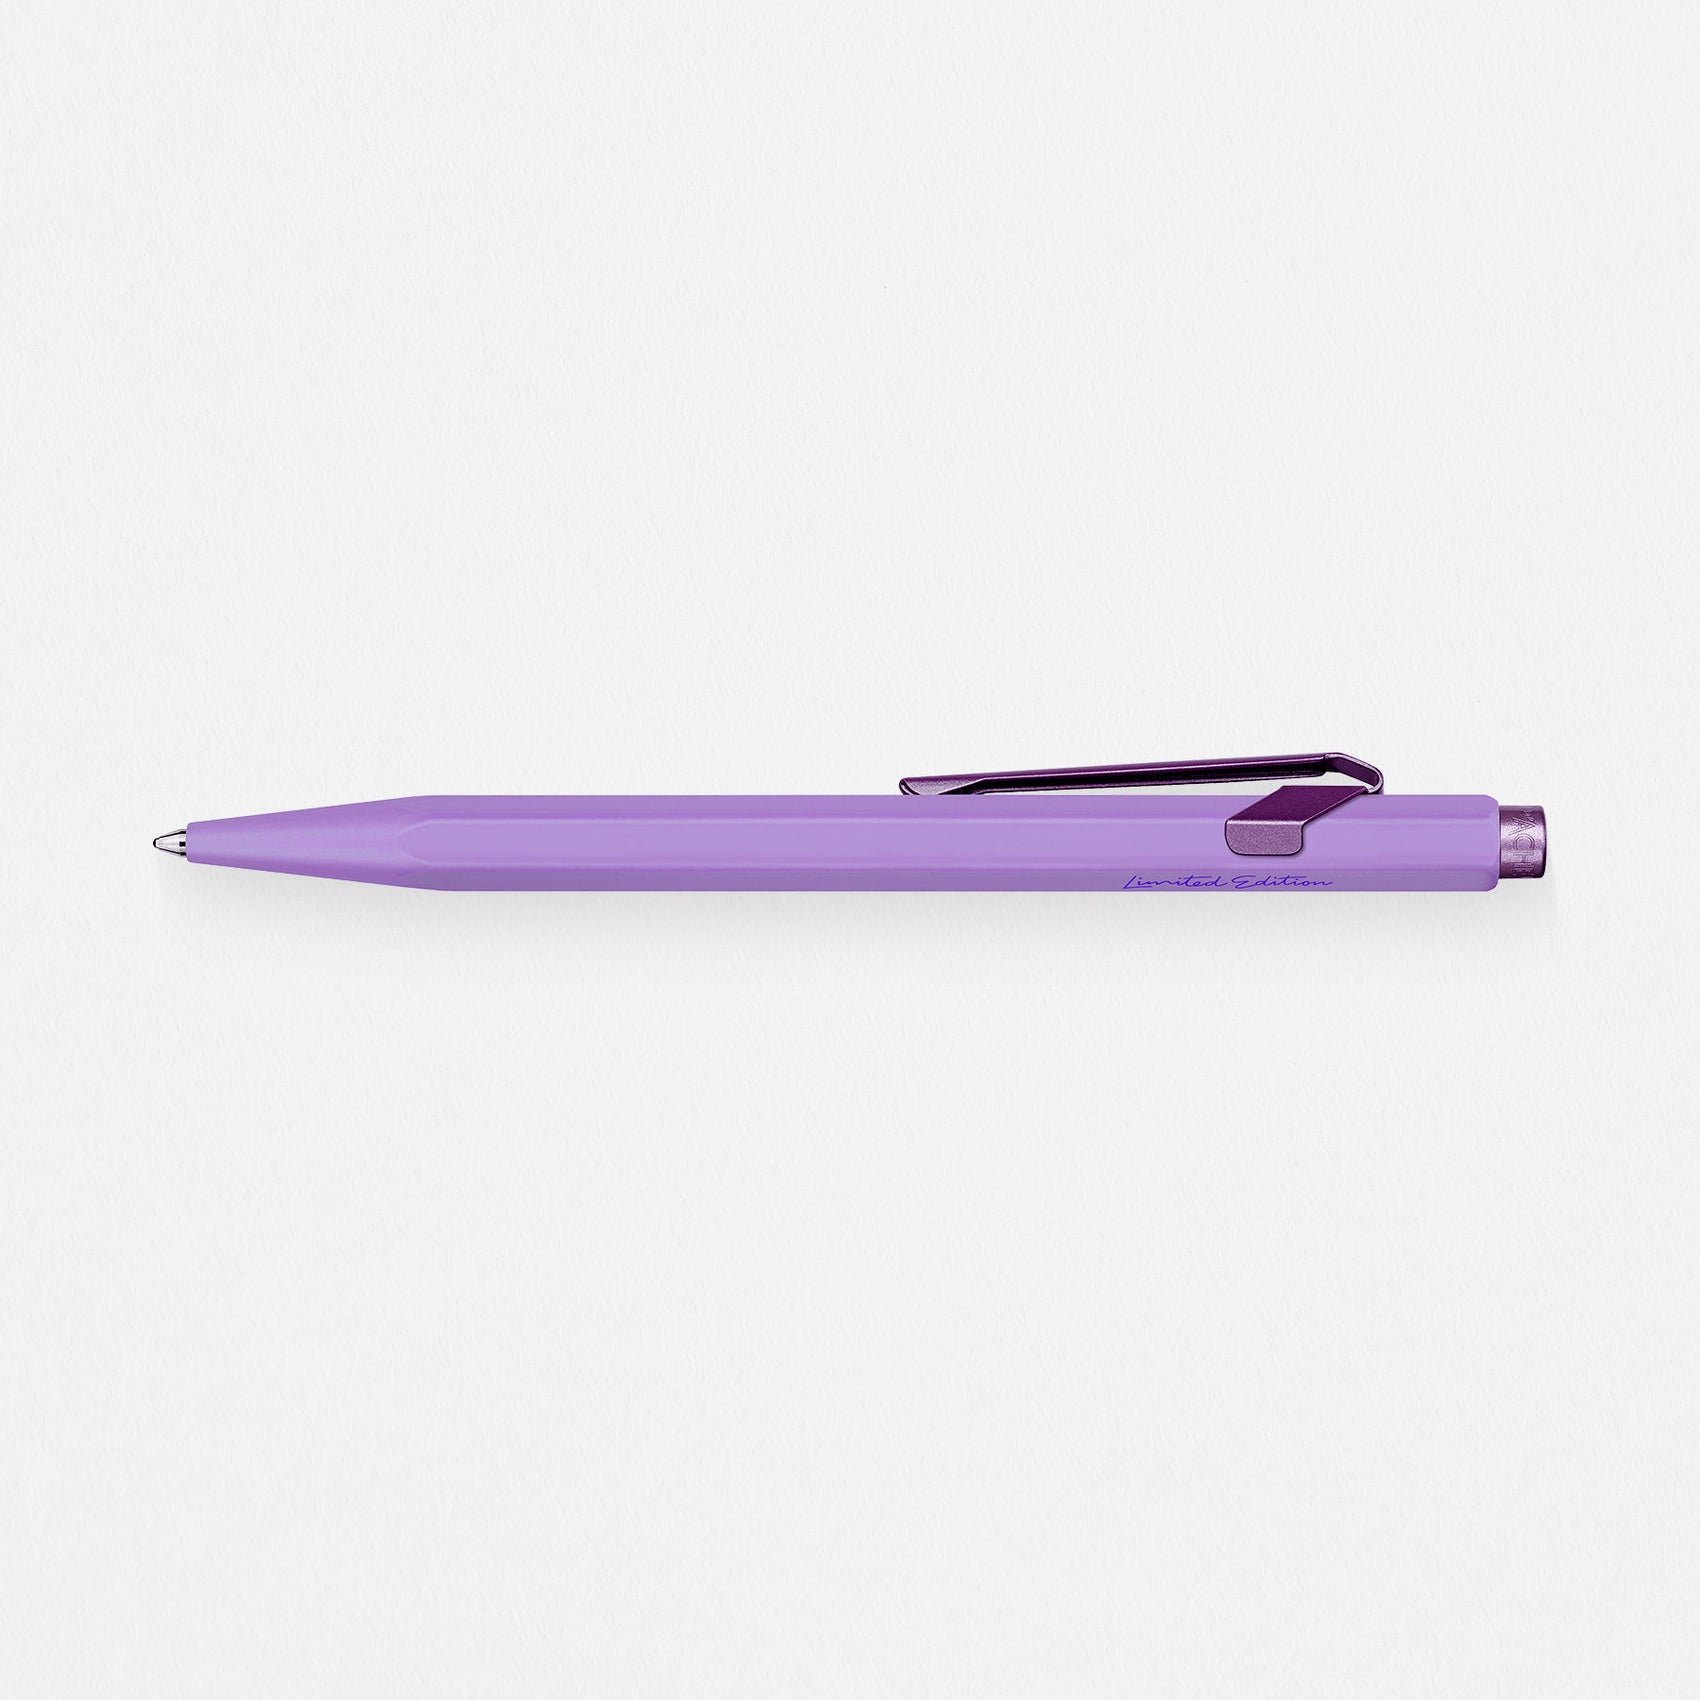 Caran d'Ache Caran d'Ache Violet Claim Your Style Monochromatic Ballpoint Pen Limited Edition 